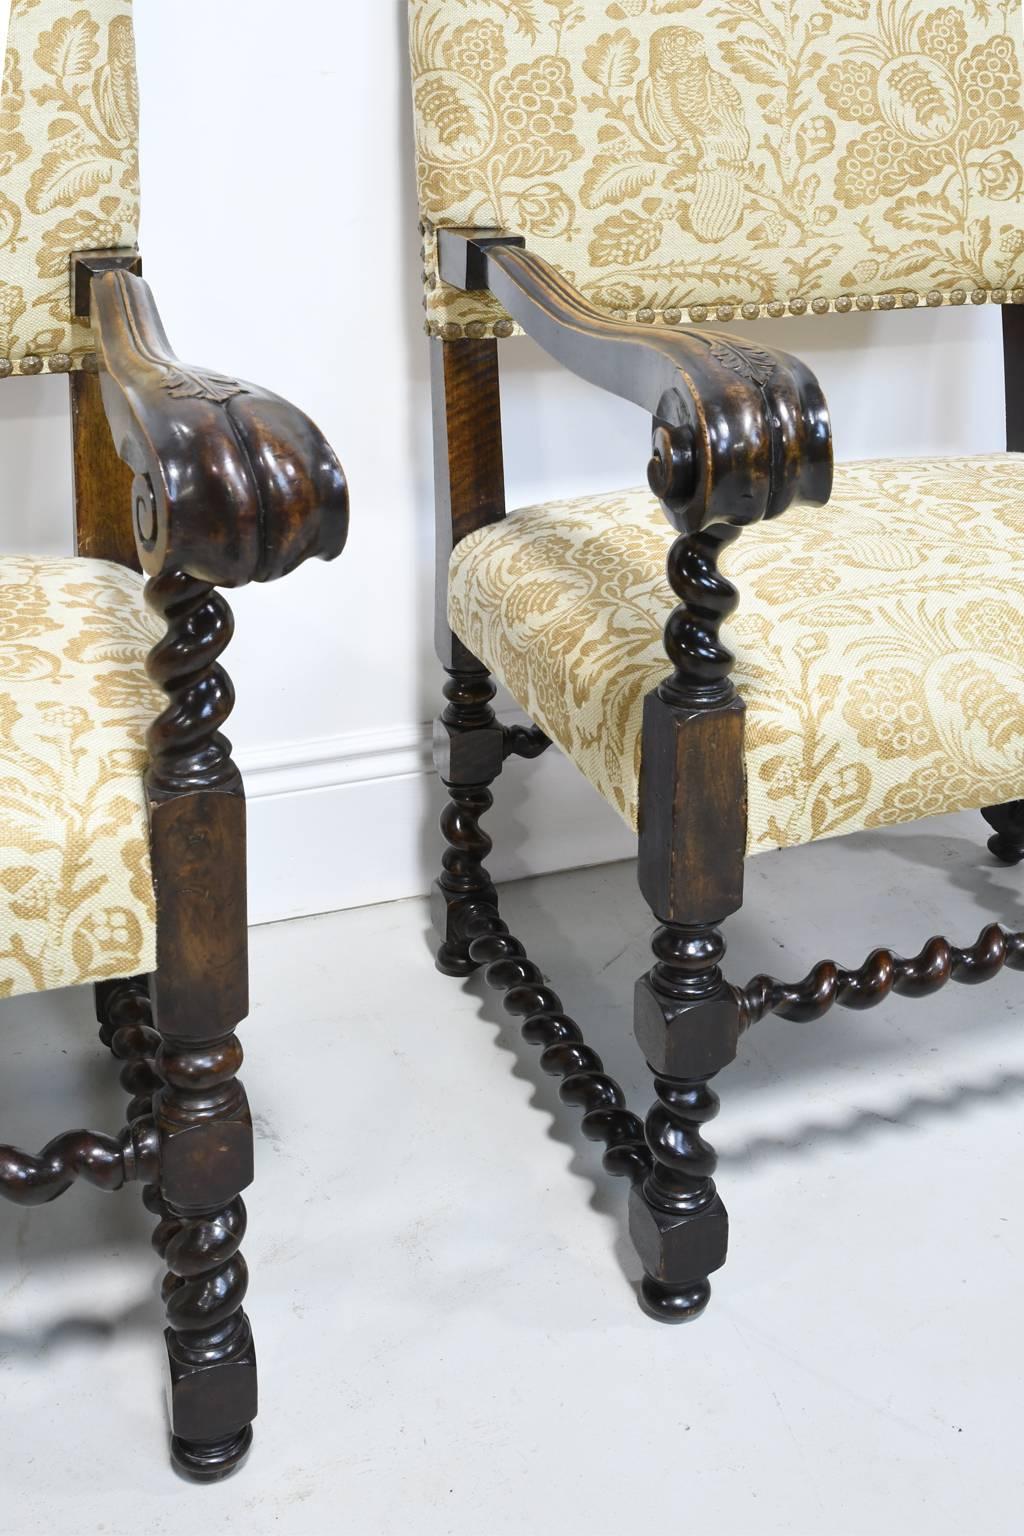 Une belle paire de chaises à trône de style jacobéen datant de la fin des années 1800, avec des plumes royales sculptées, des tournures en bloc et en orge, et un dossier et une assise rembourrés. Dans la nouvelle série de PBS 